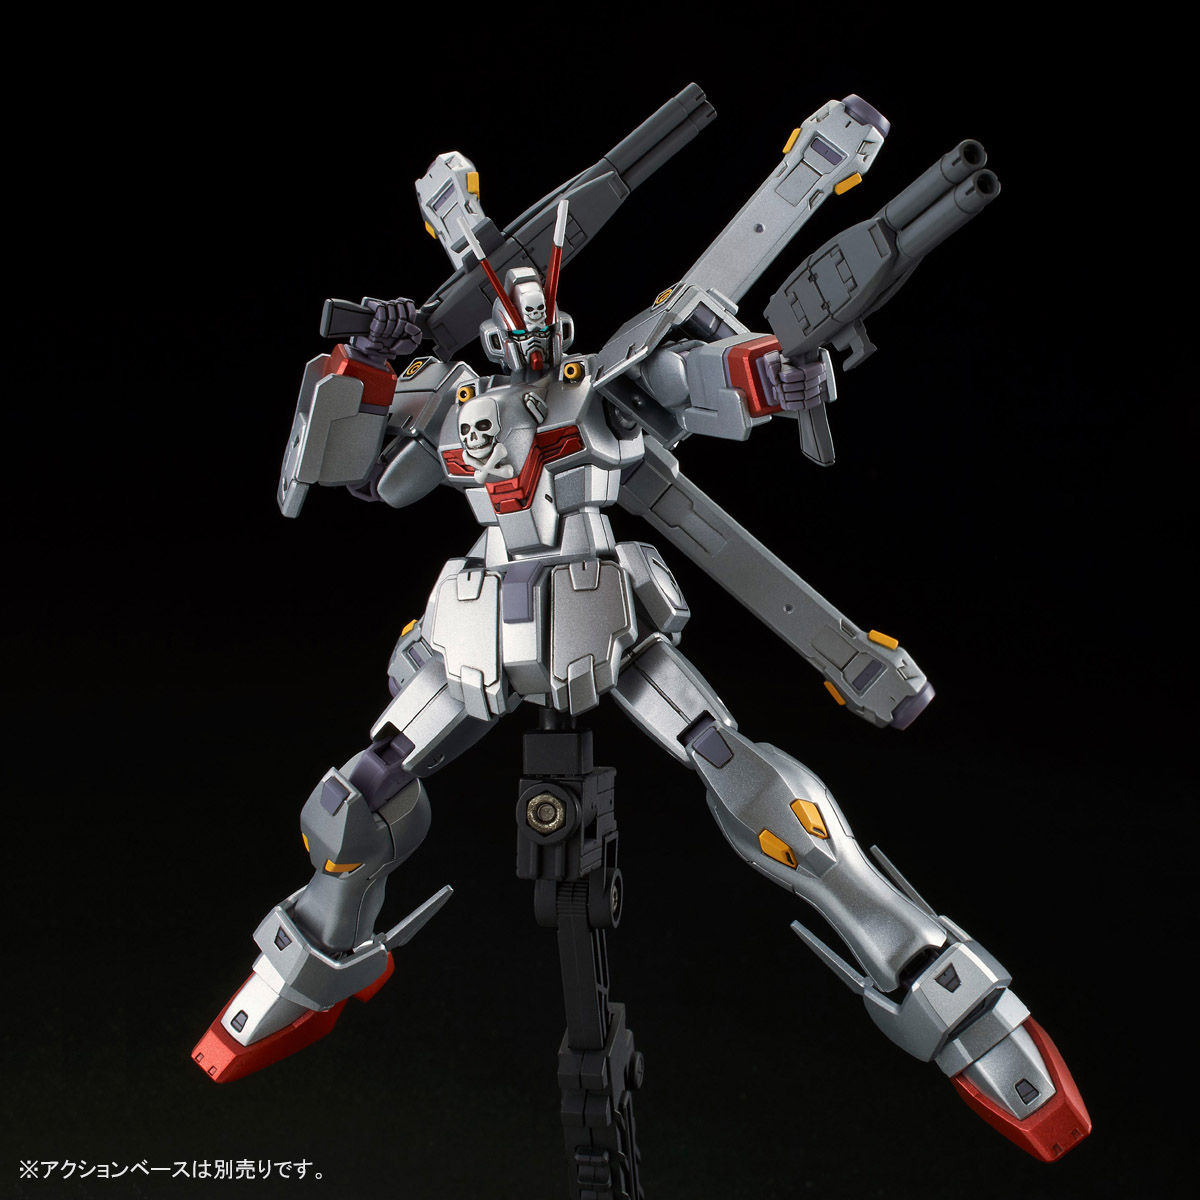 XM-X0(F97-X0) クロスボーン・ガンダムX-0〈クロスボーン・ガンダム ゴースト〉[Crossbone Gundam X-0 “Crossbone Gundam Ghost”]